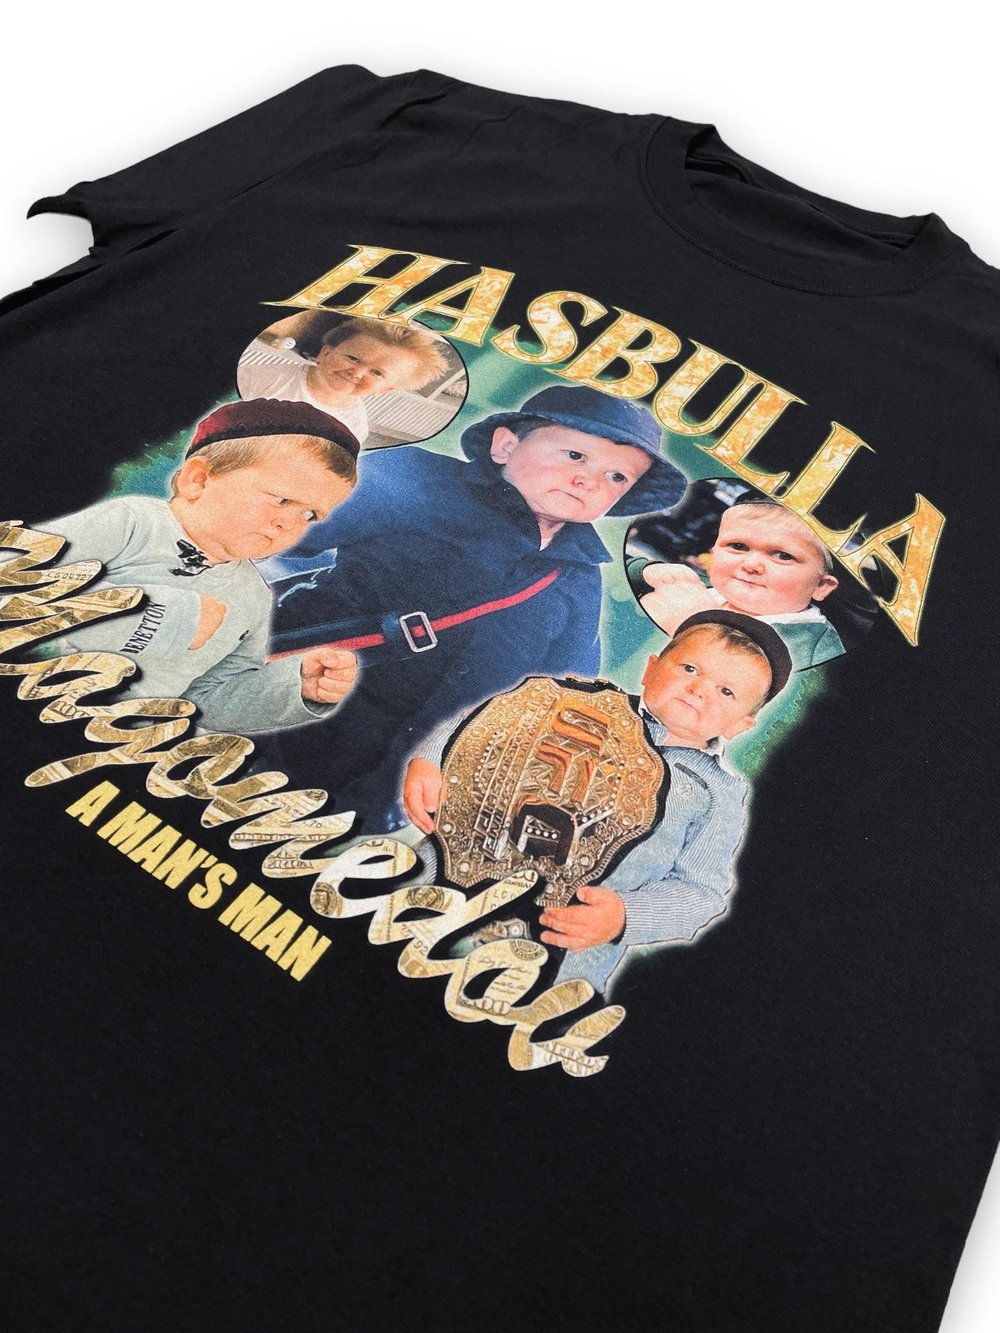 Retro King Hasbulla Shirt -King Hasbulla Tshirt,Hasbulla Hom